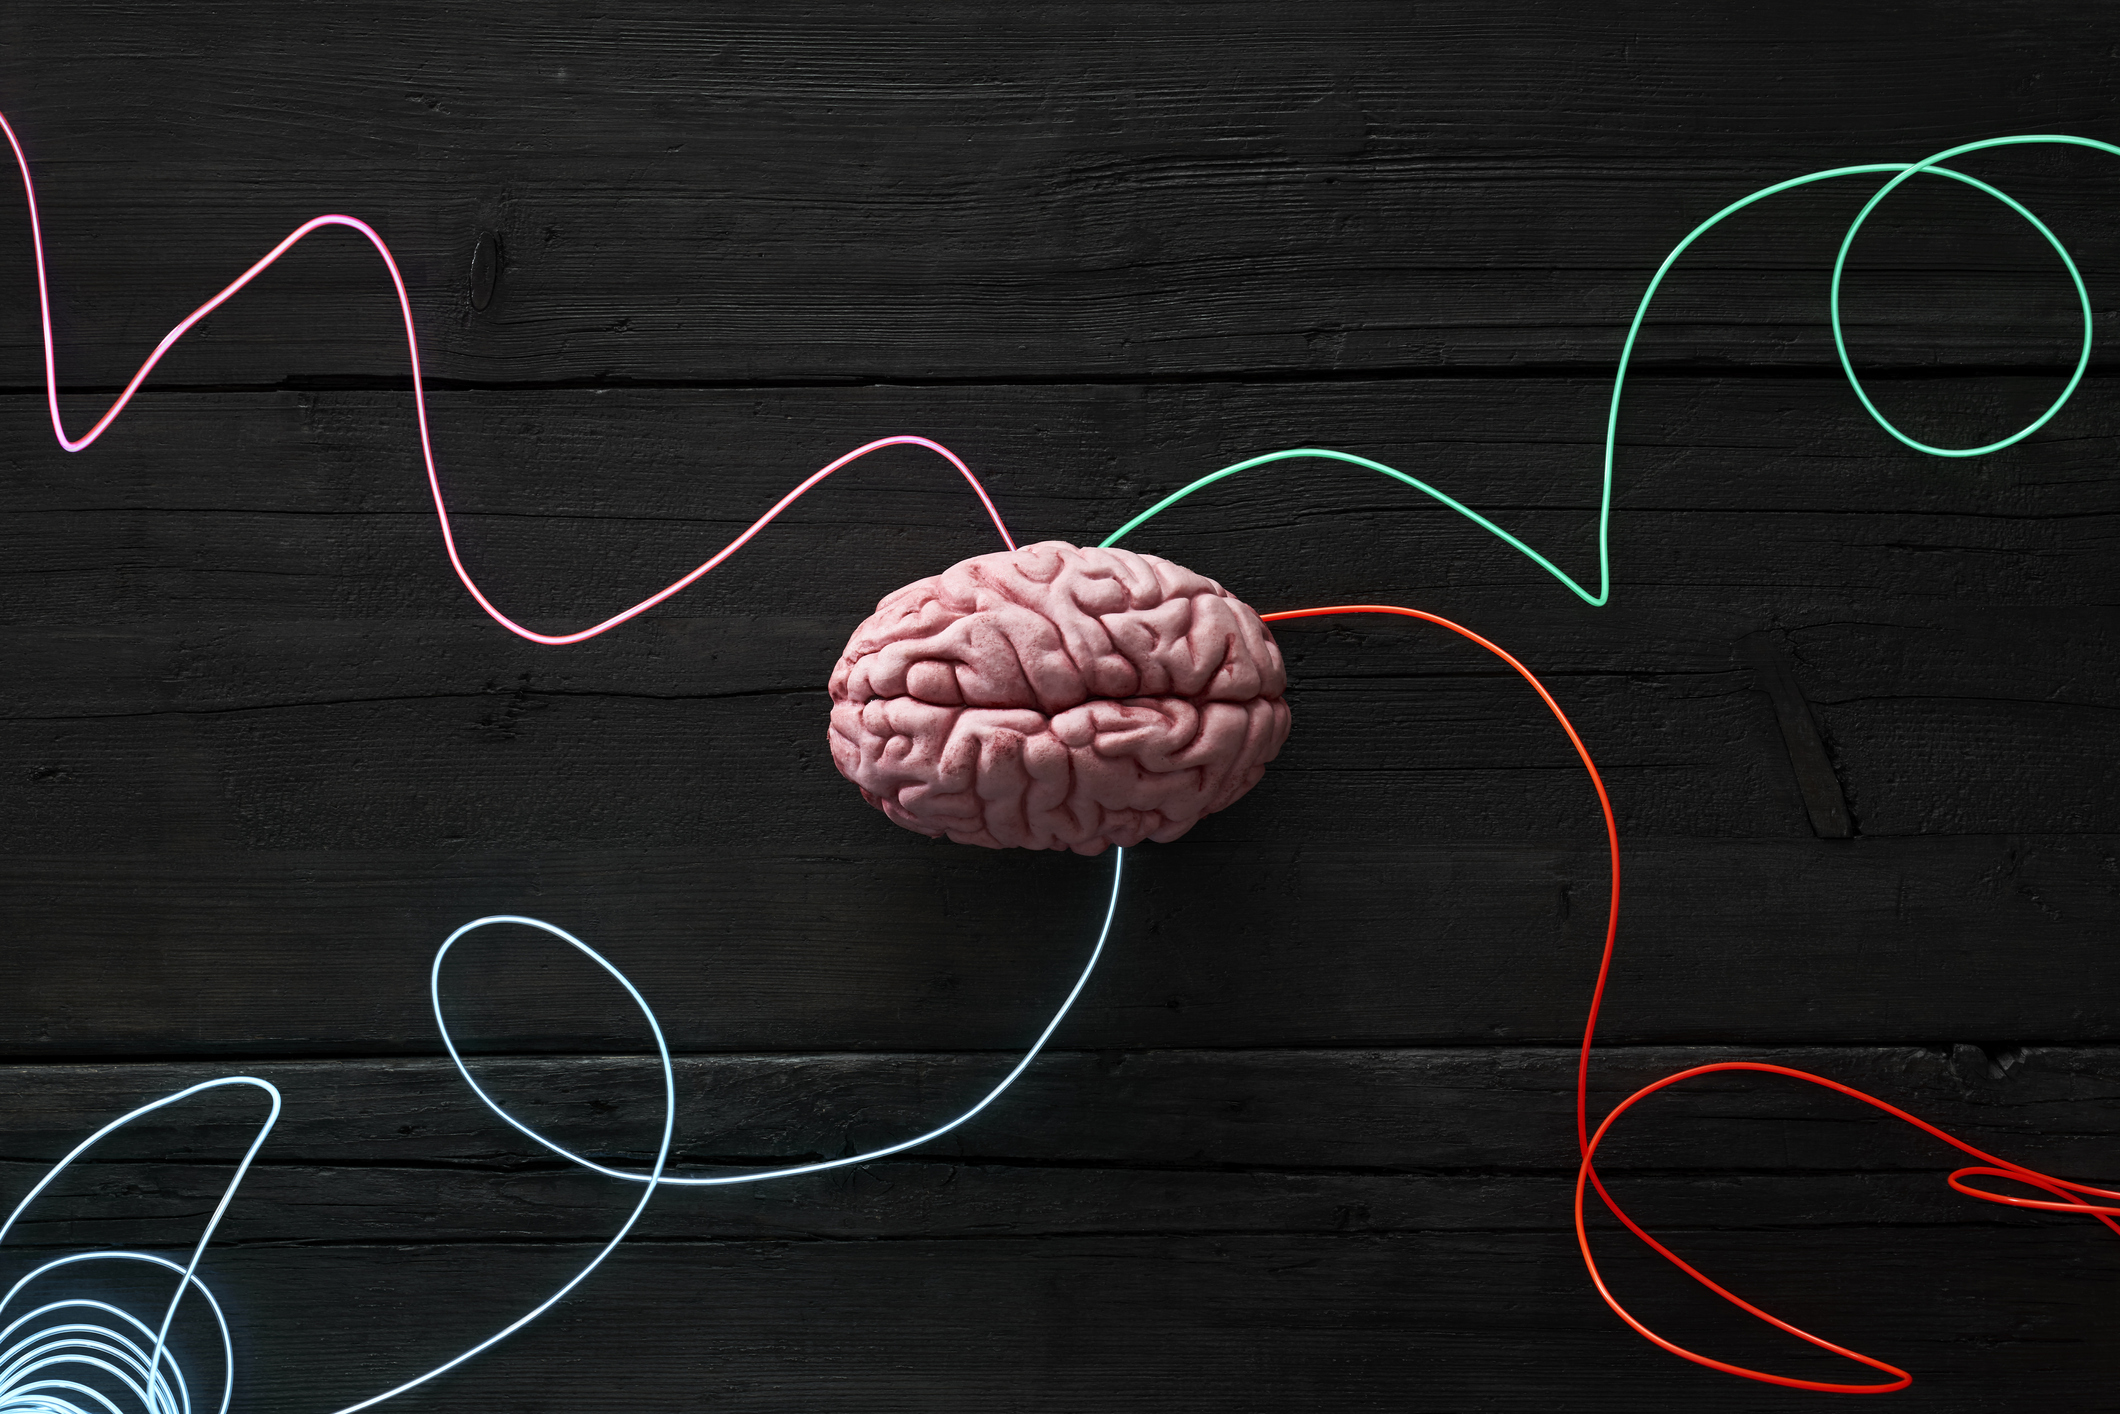 Wired brain illustration